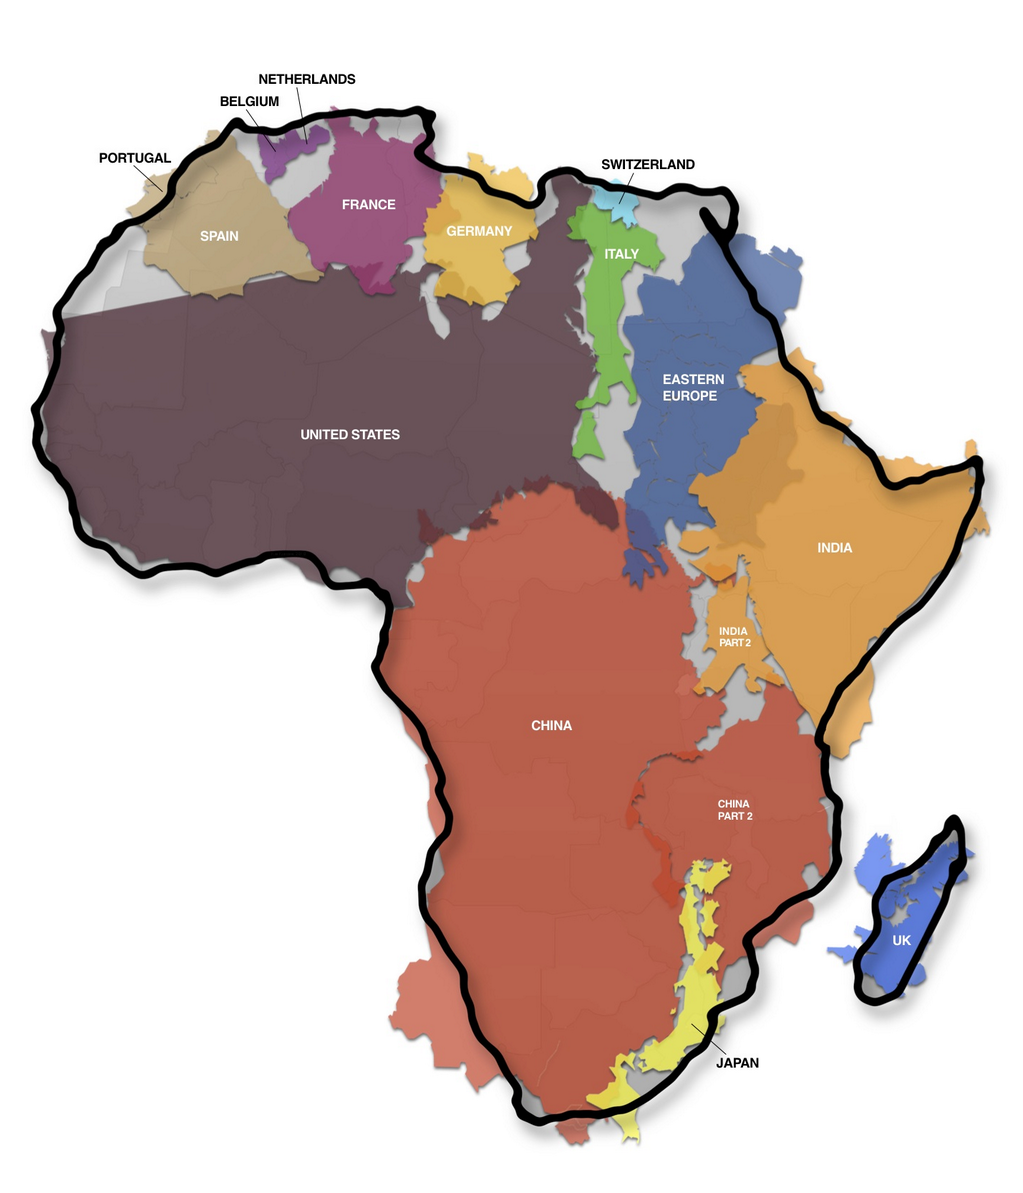 アフリカの本当の大きさ」が分かる1枚の画像 | トジョウエンジン